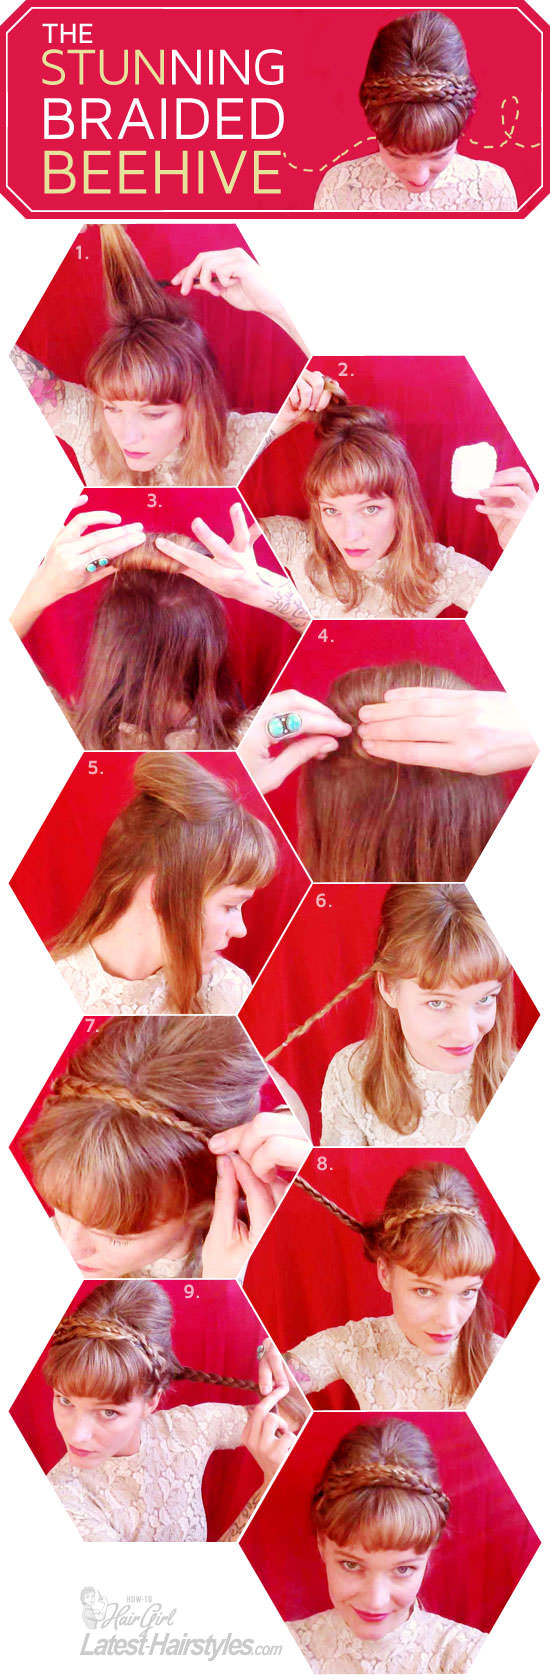 braided beehive hair tutorial